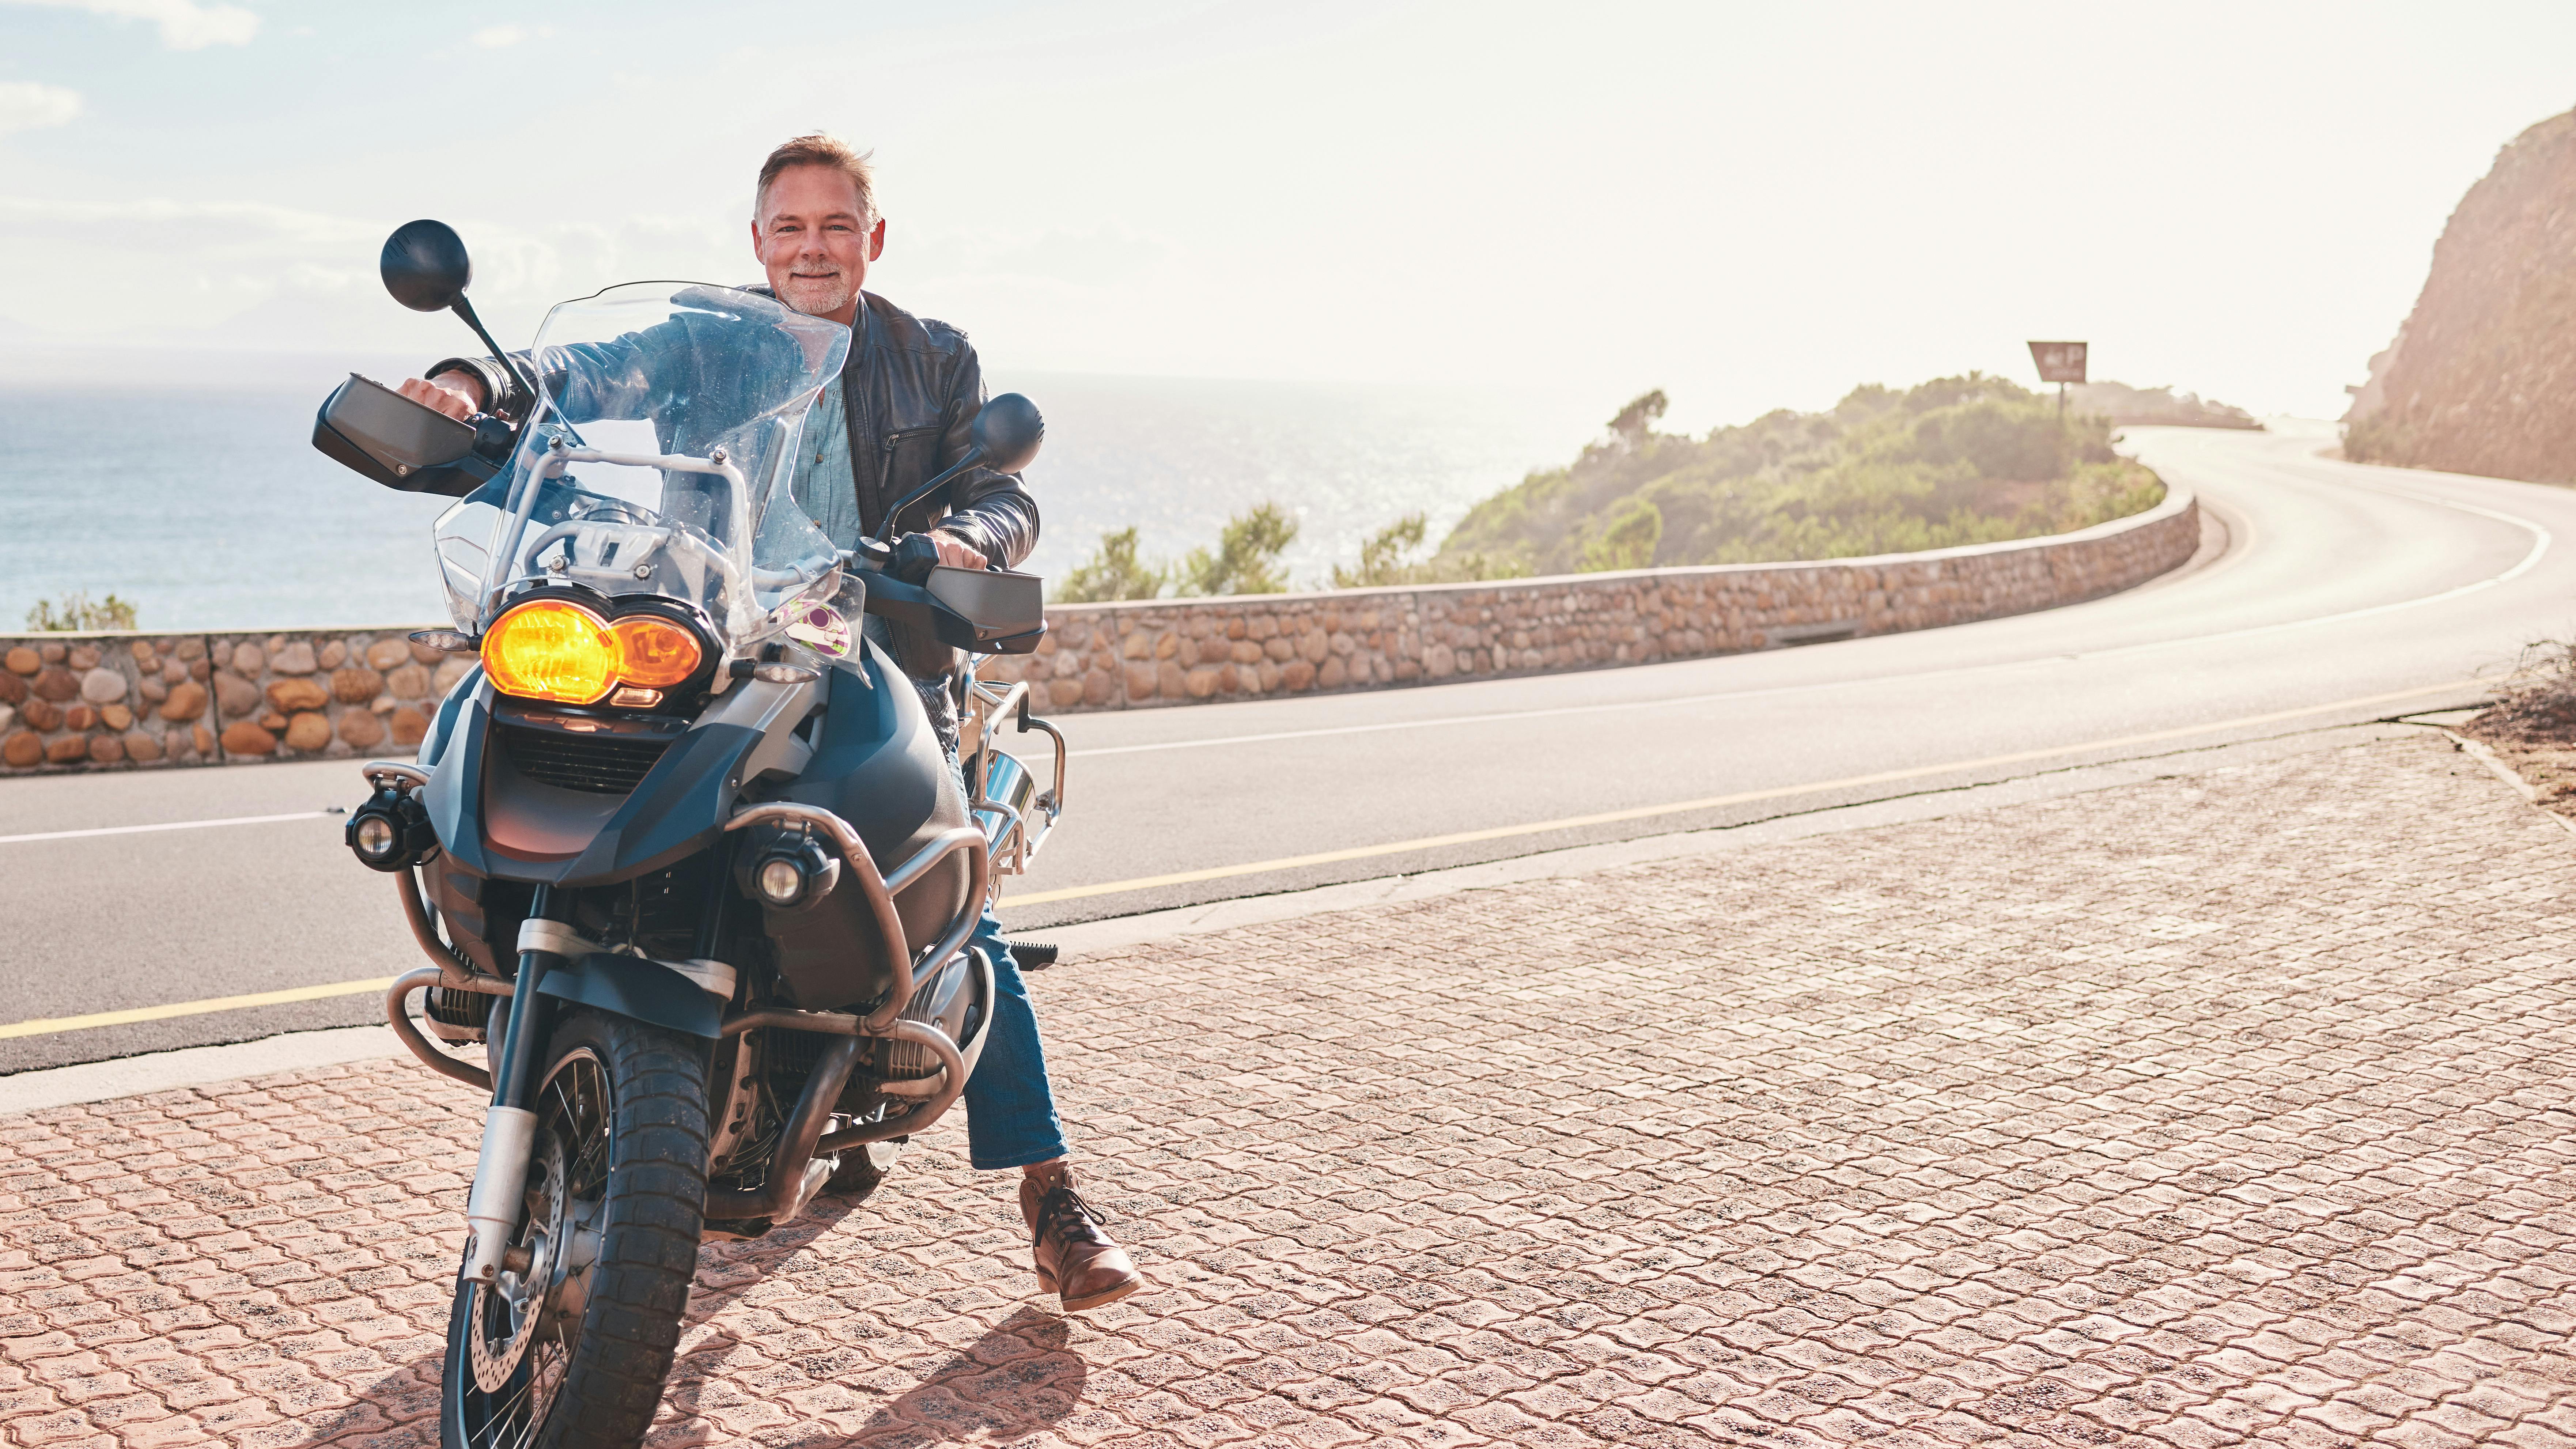 Midaldrende mand holder på sin motorcykel på en bjergvej langs havet.